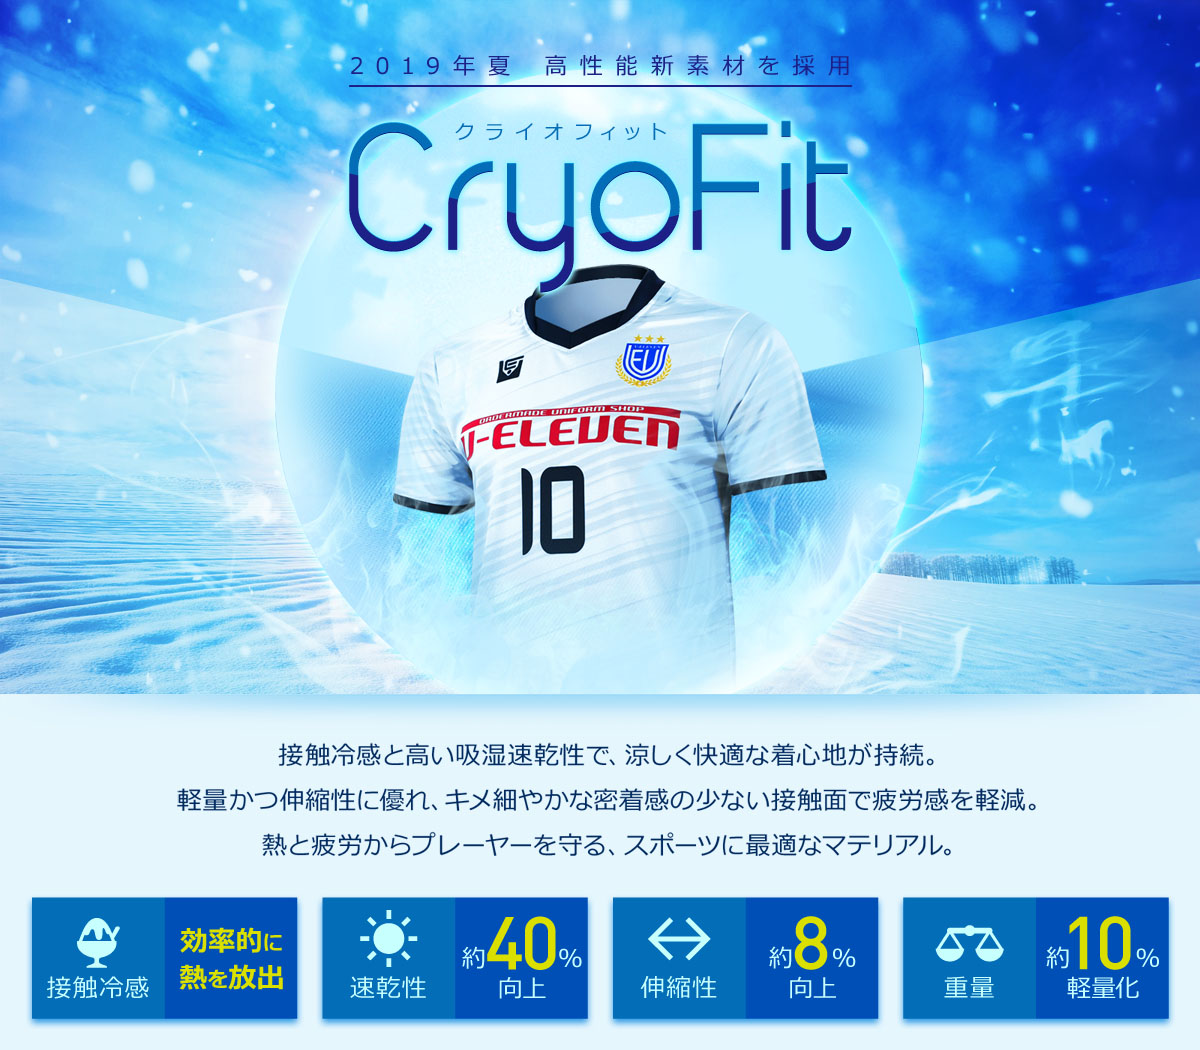 2019夏より高性能新素材「CryoFit」を採用。接触冷感と高い吸湿速乾性を備え、涼しく快適な着心地。軽量かつ伸縮性に優れ、滑らかな肌触りで密着感が少なく、動きを妨げない。熱と疲労からプレーヤーを守るスポーツに最適なマテリアル。